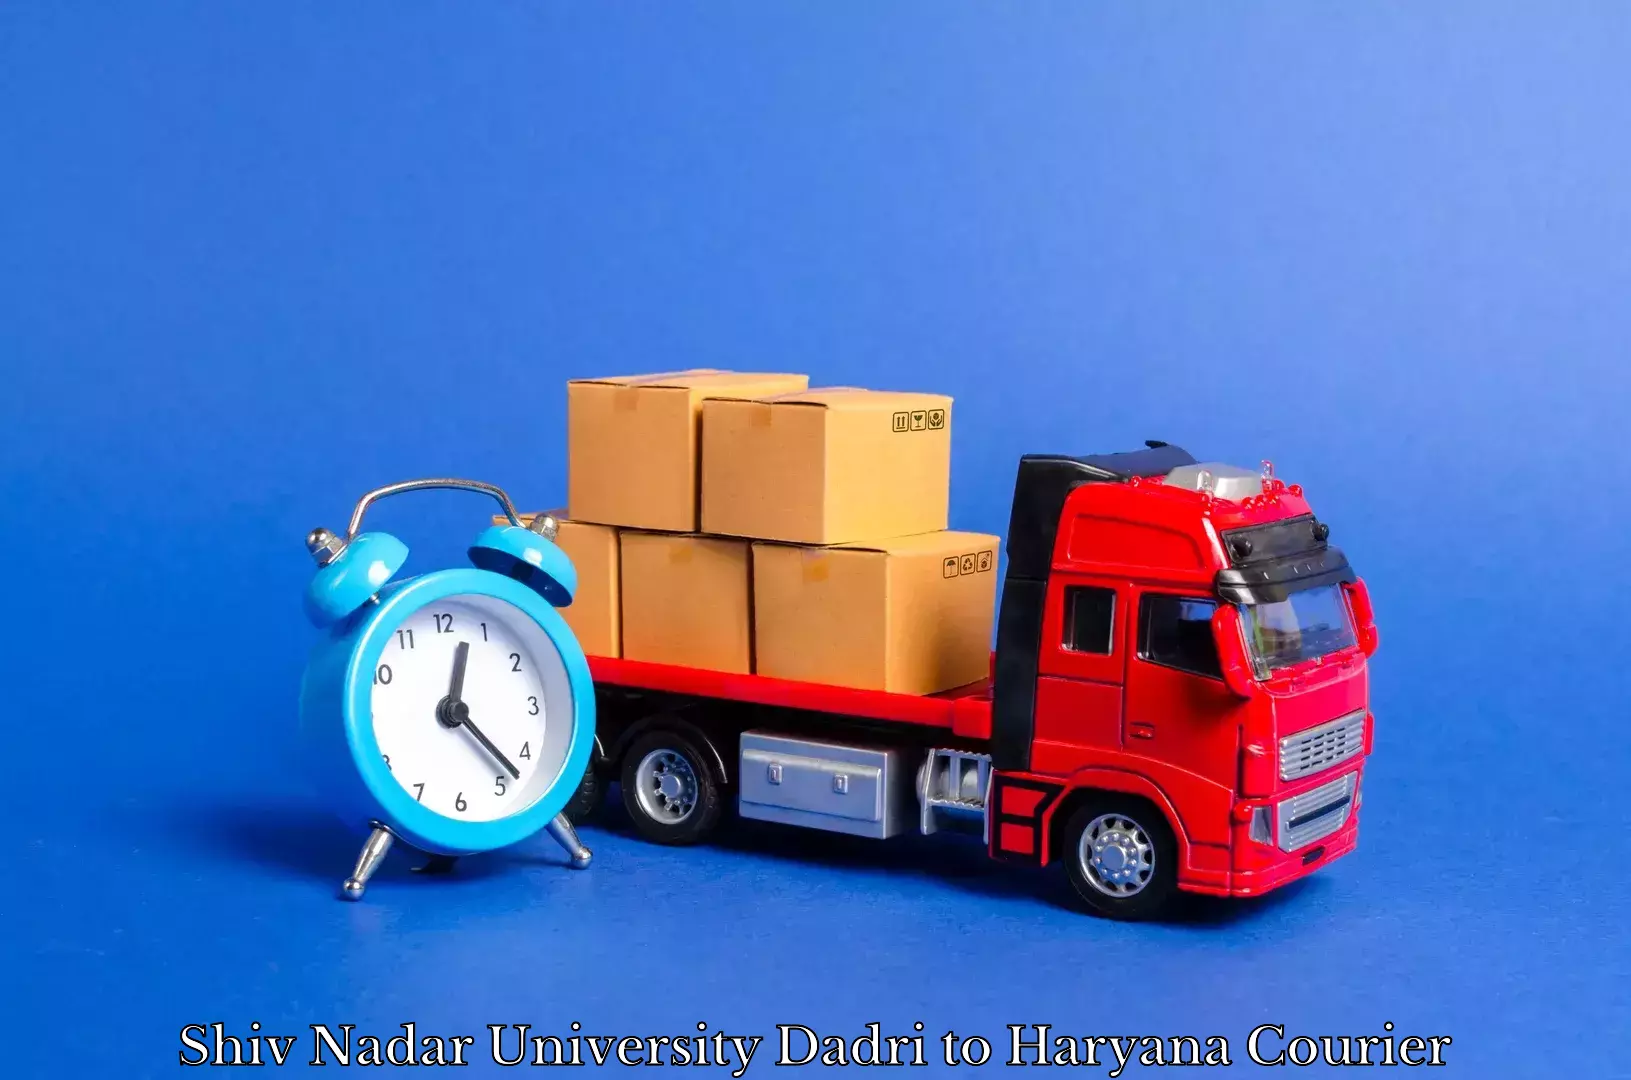 Furniture delivery service Shiv Nadar University Dadri to Faridabad